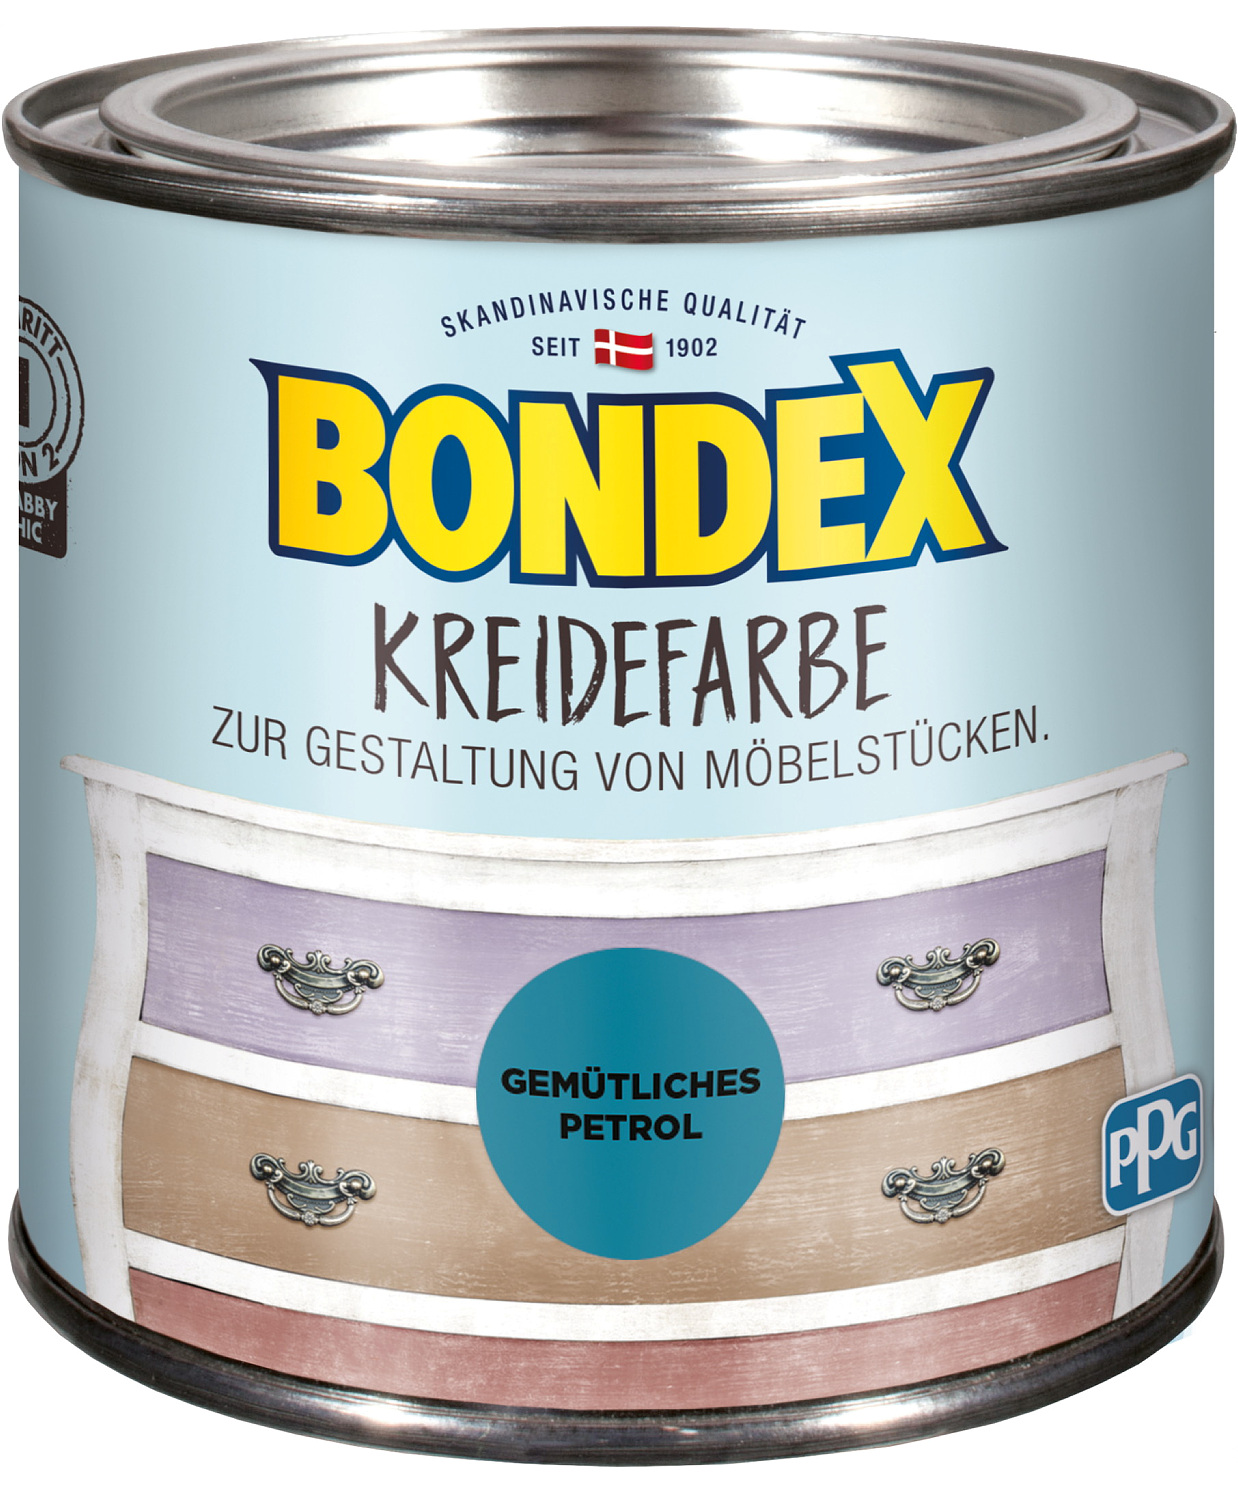 Bondex Kreidefarbe Gemütliches Petrol 0,5l